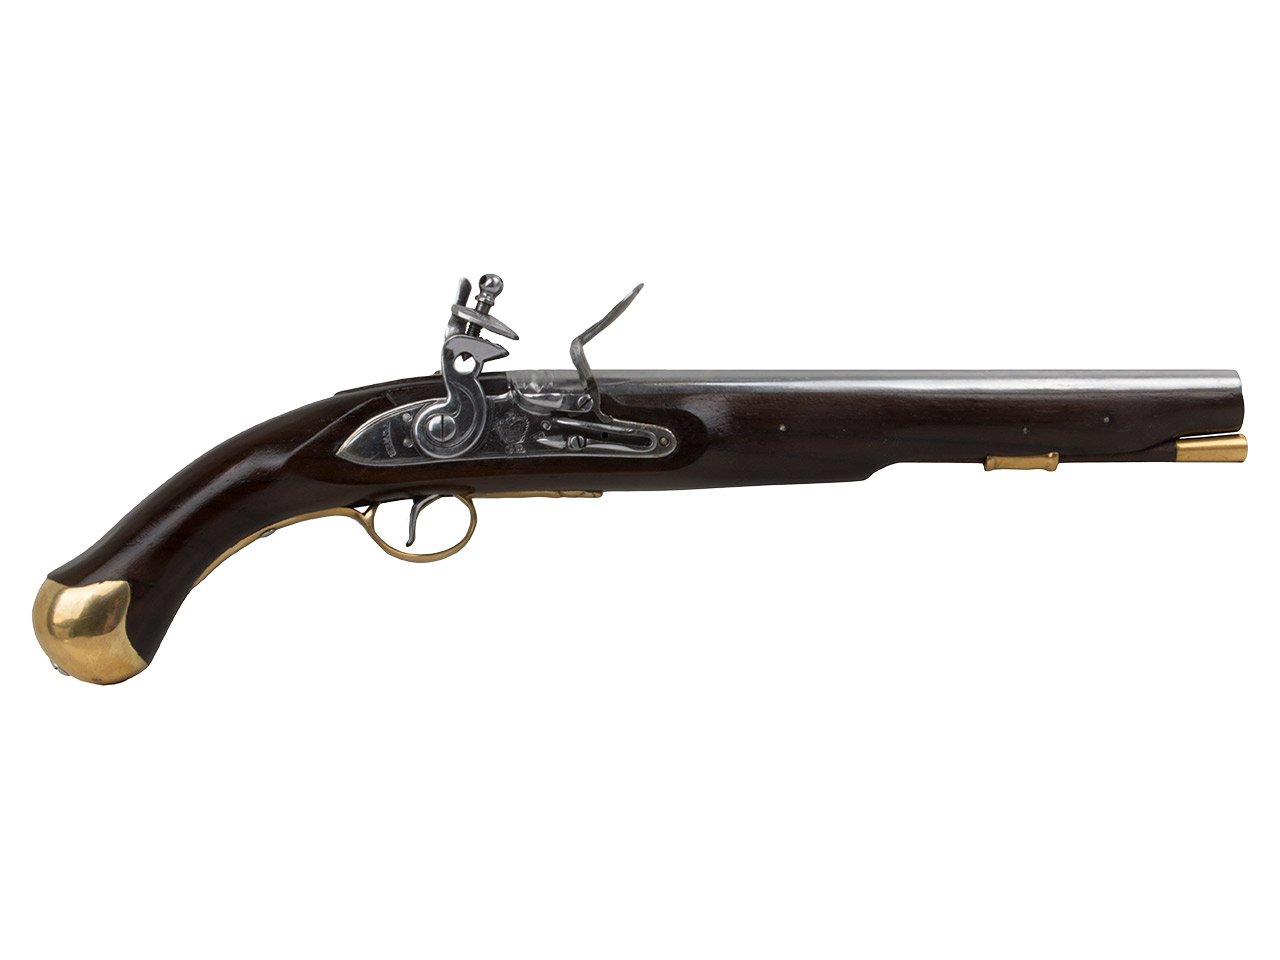 Vorderlader Steinschlosspistole British Royal Navy Sea Service Pistol Pattern 1756 Kaliber .63 bzw. 16 mm (P18)